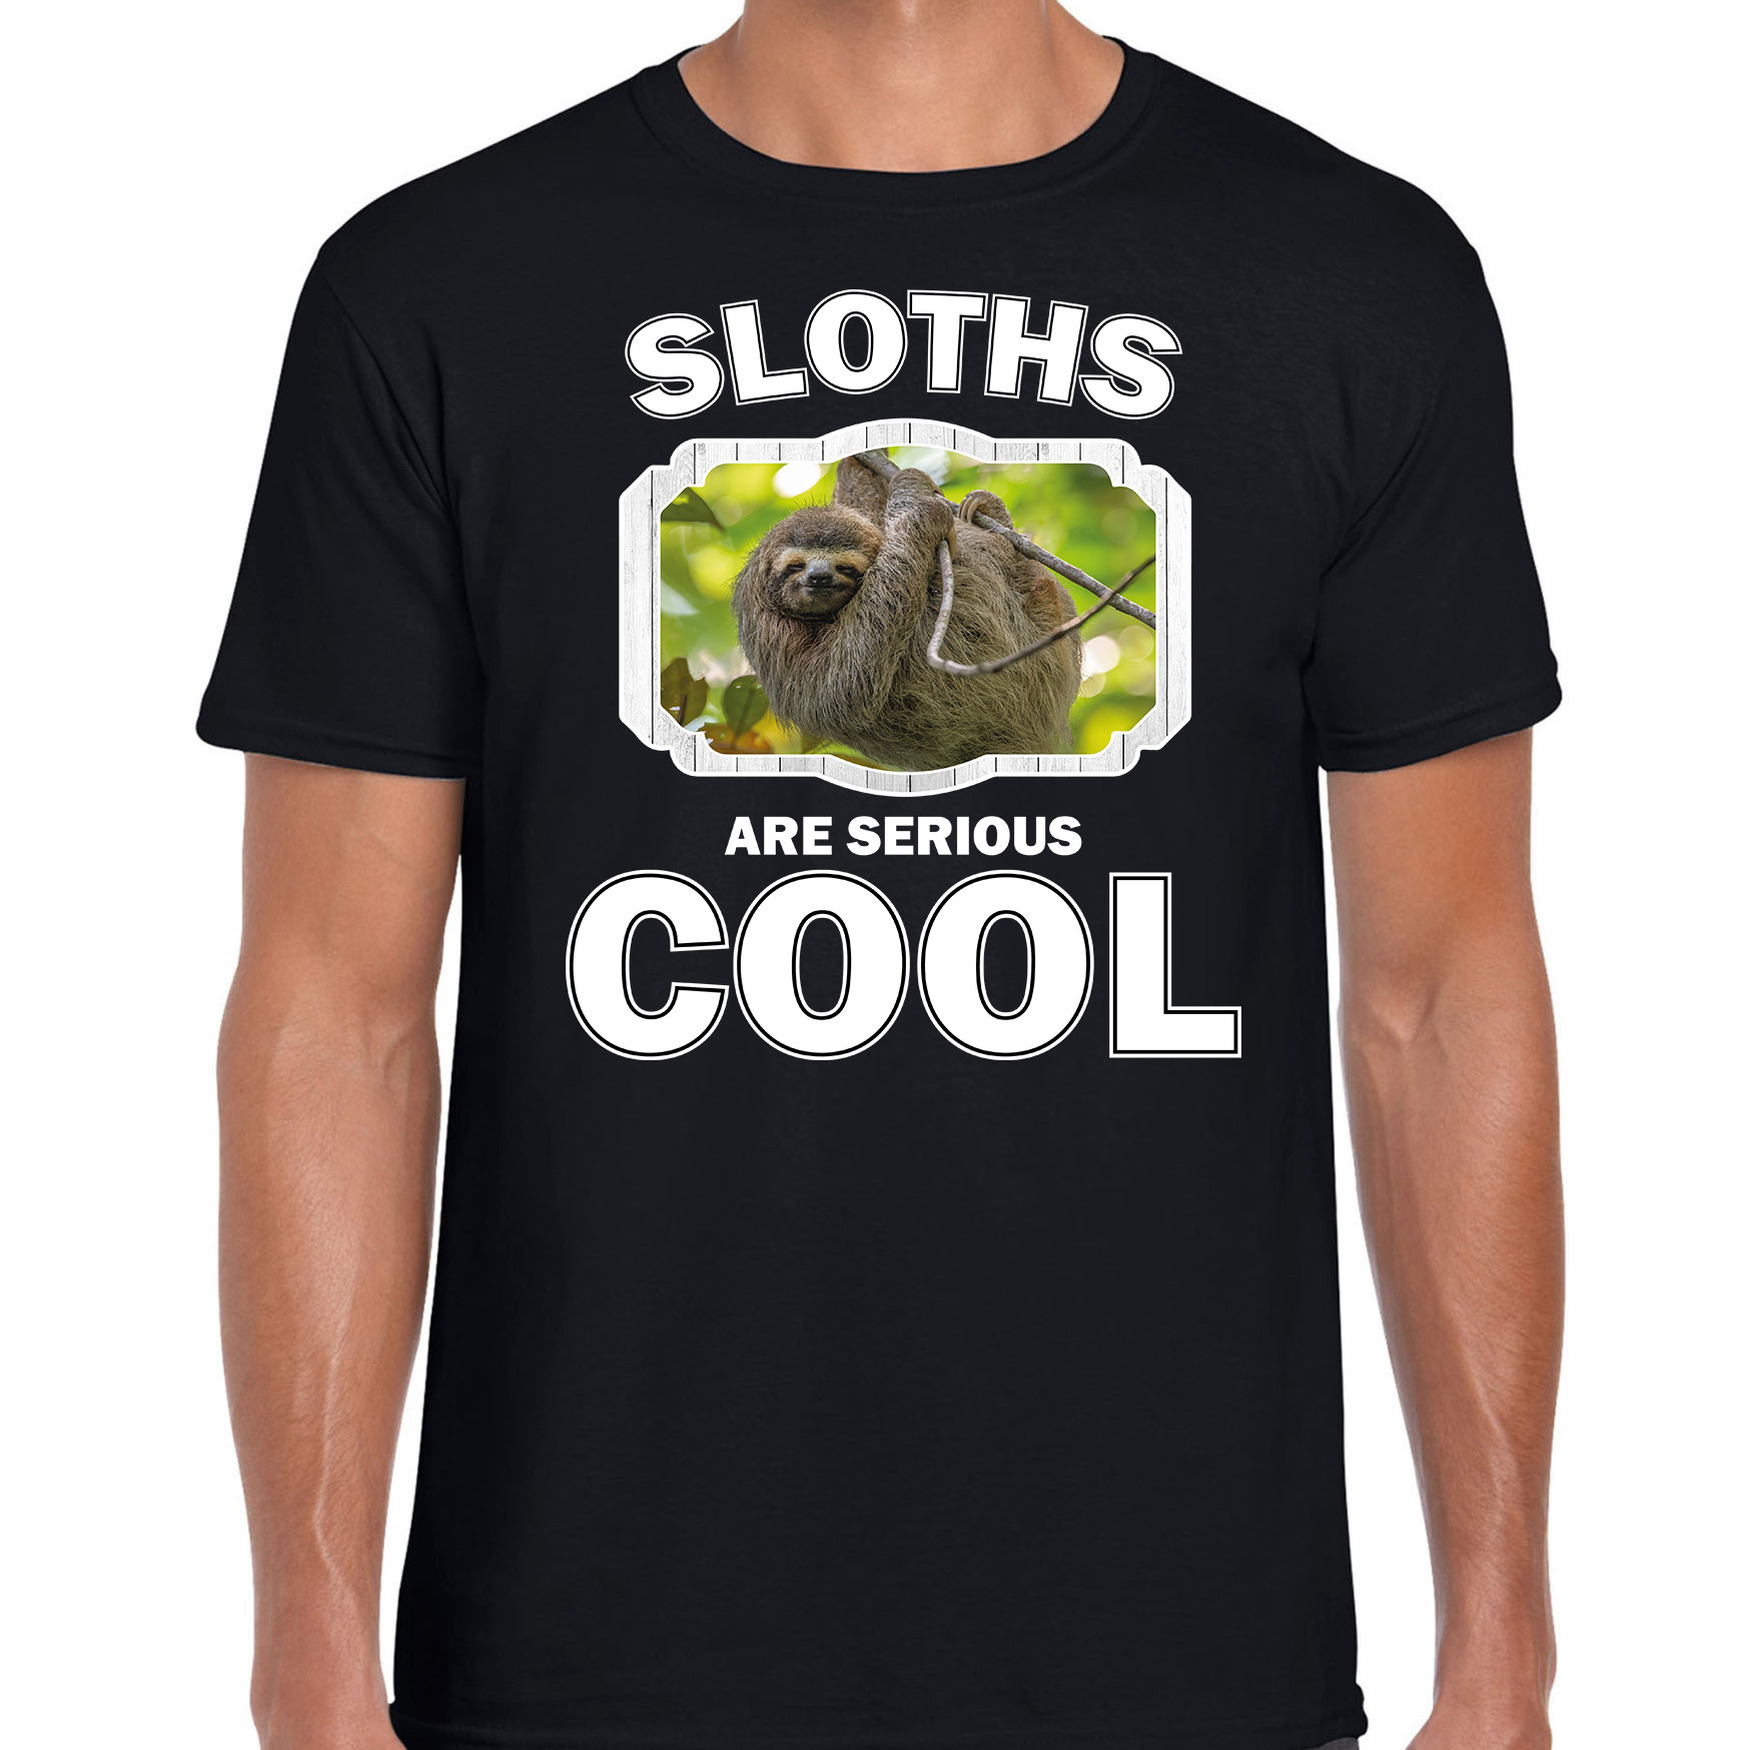 Dieren luiaard t-shirt zwart heren - sloths are cool shirt